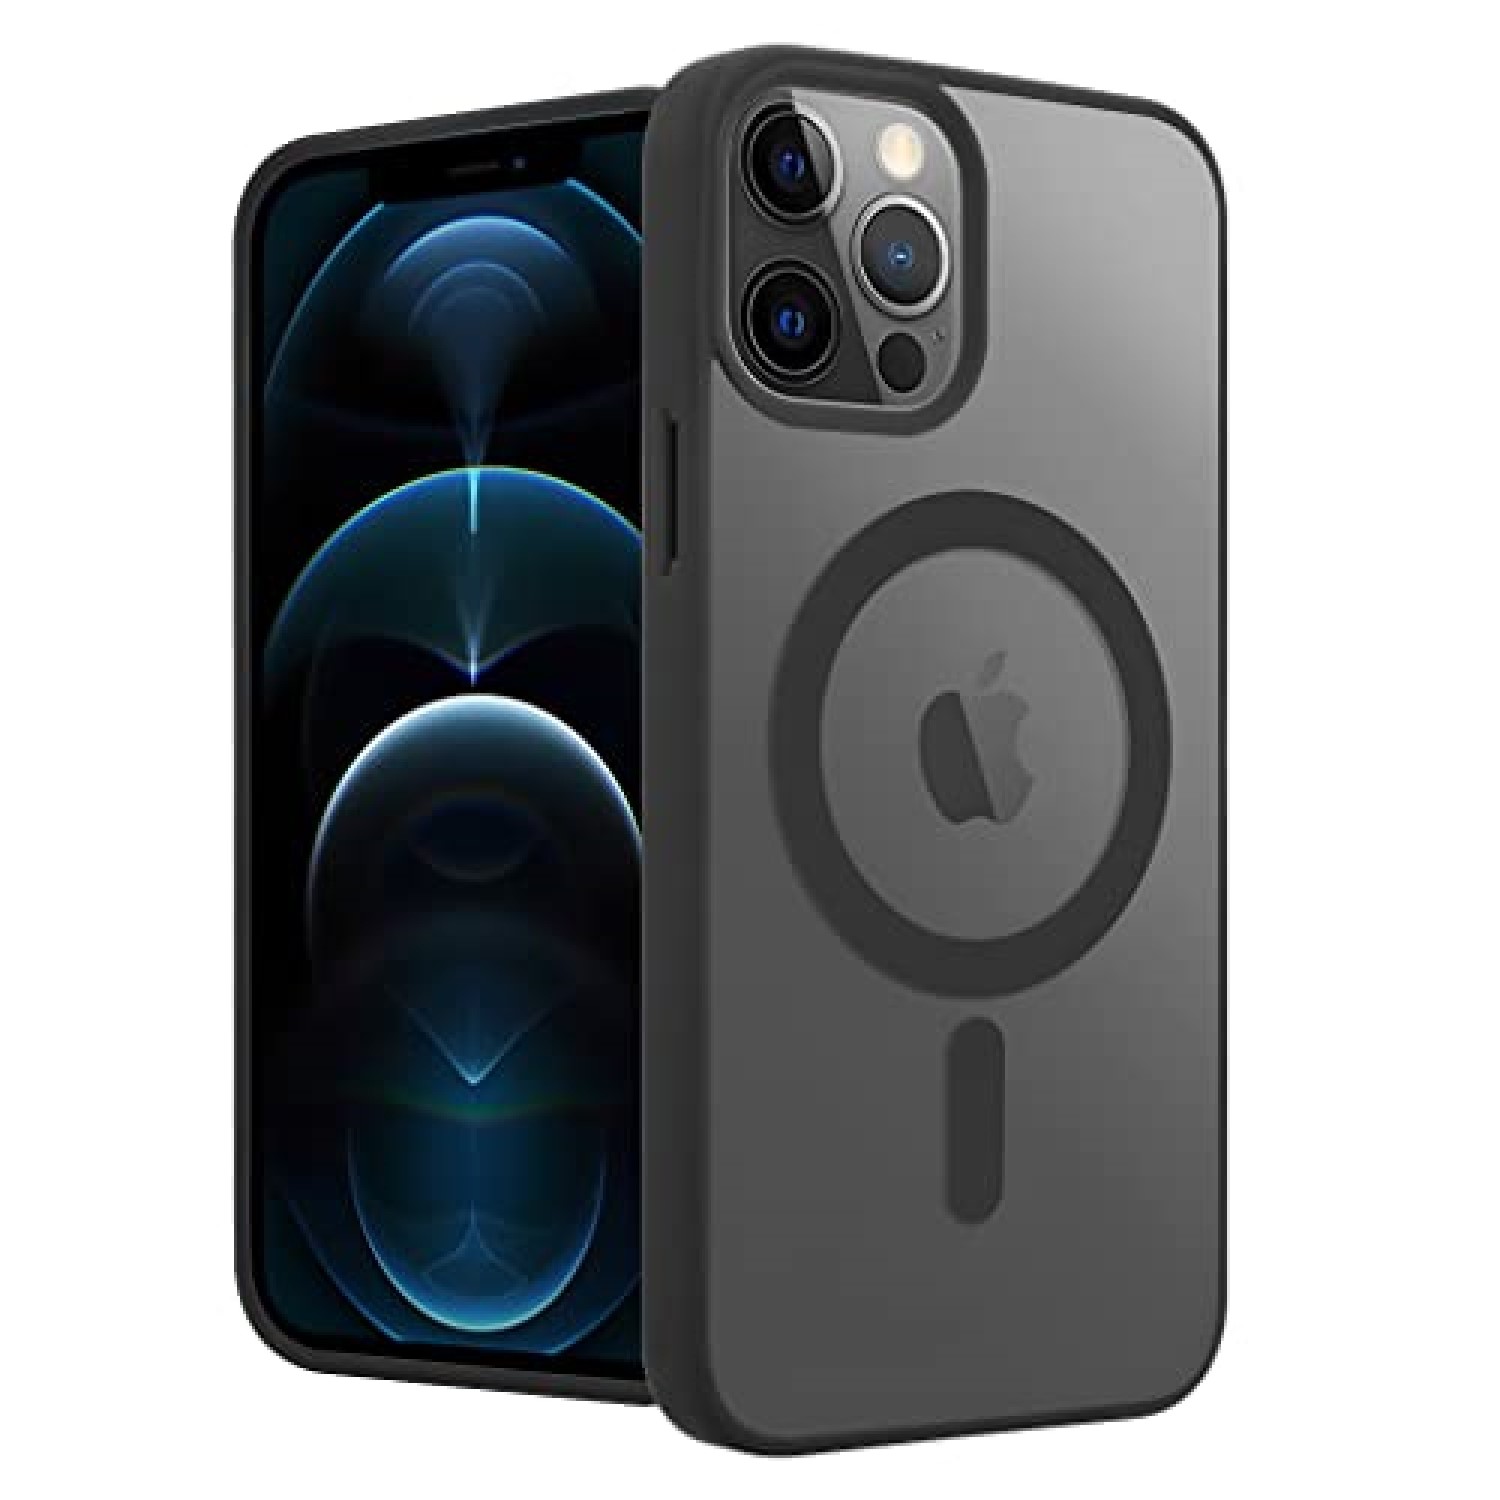 Funda magnética fuerte para iPhone 11 Pro Max, compatible con MagSafe,  funda protectora a prueba de golpes para iPhone 11 Pro Max de 6.5 pulgadas